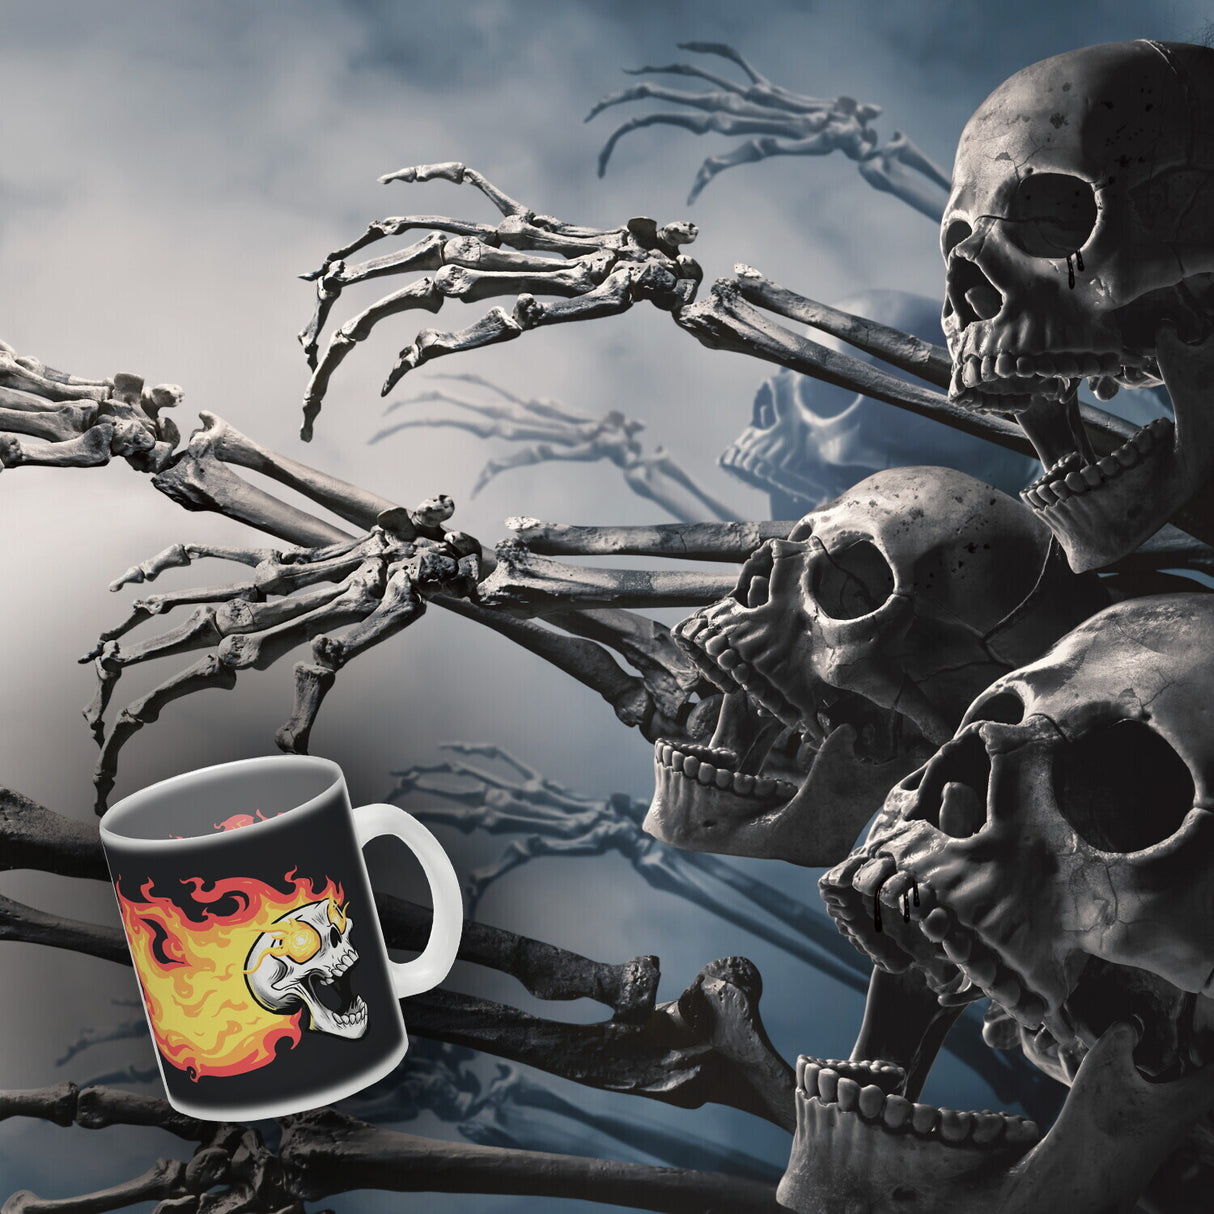 Rock n' Roll Kaffeebecher mit Flammen und Totenkopf